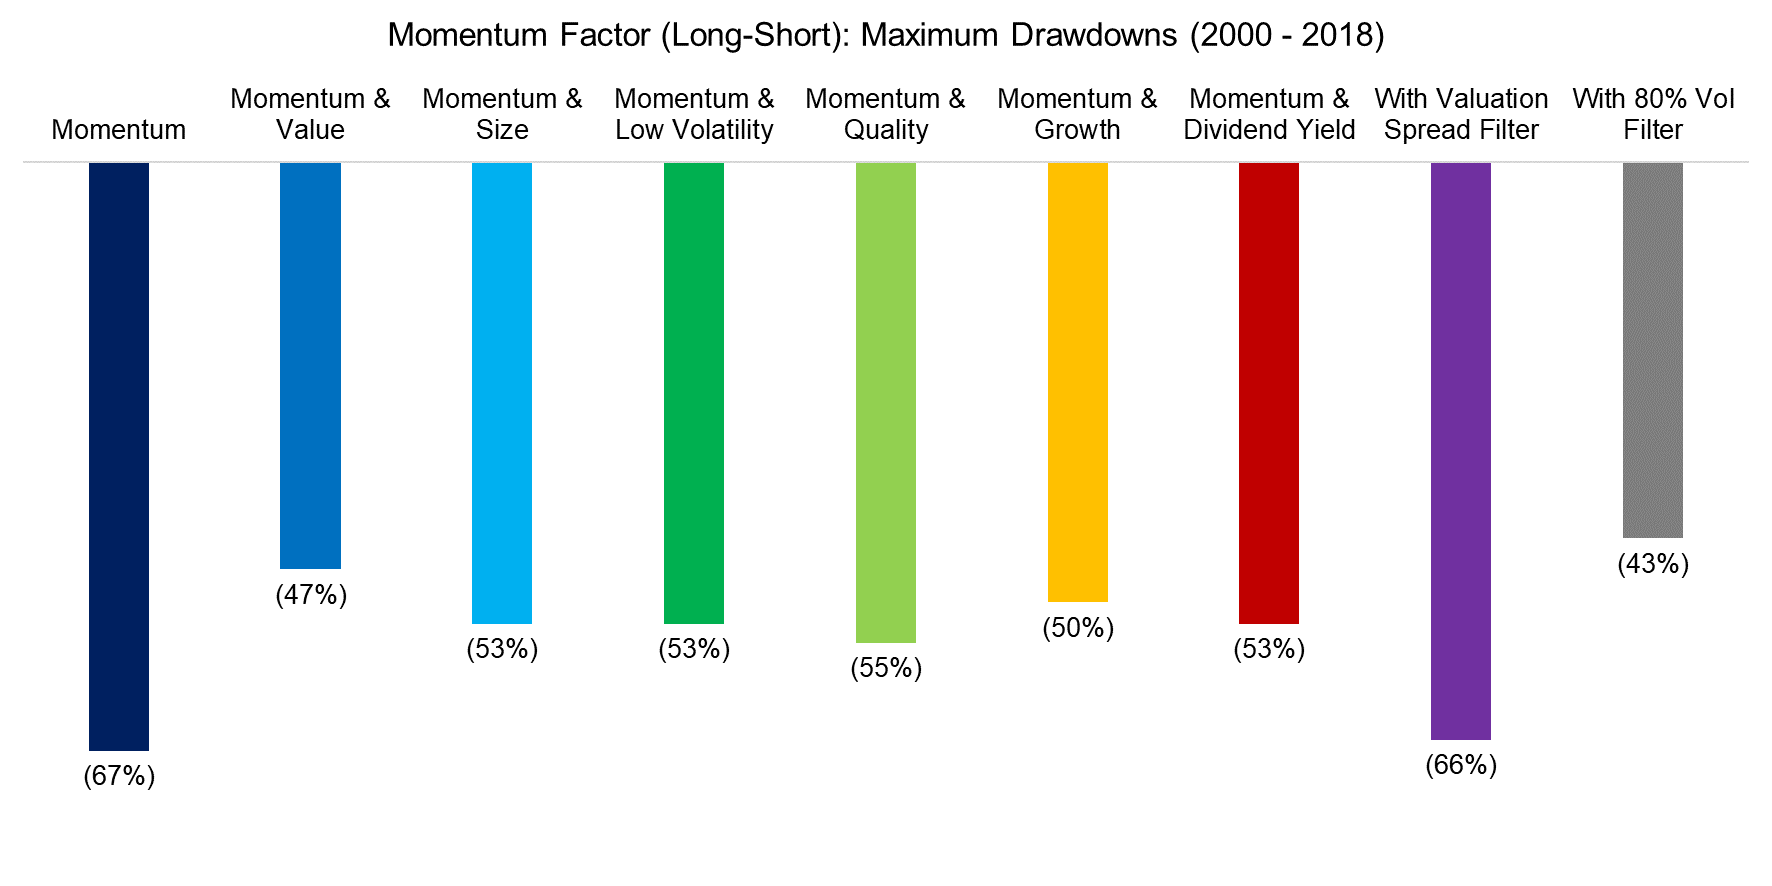 Momentum Factor (Long-Short) Maximum Drawdowns (2000 - 2018)